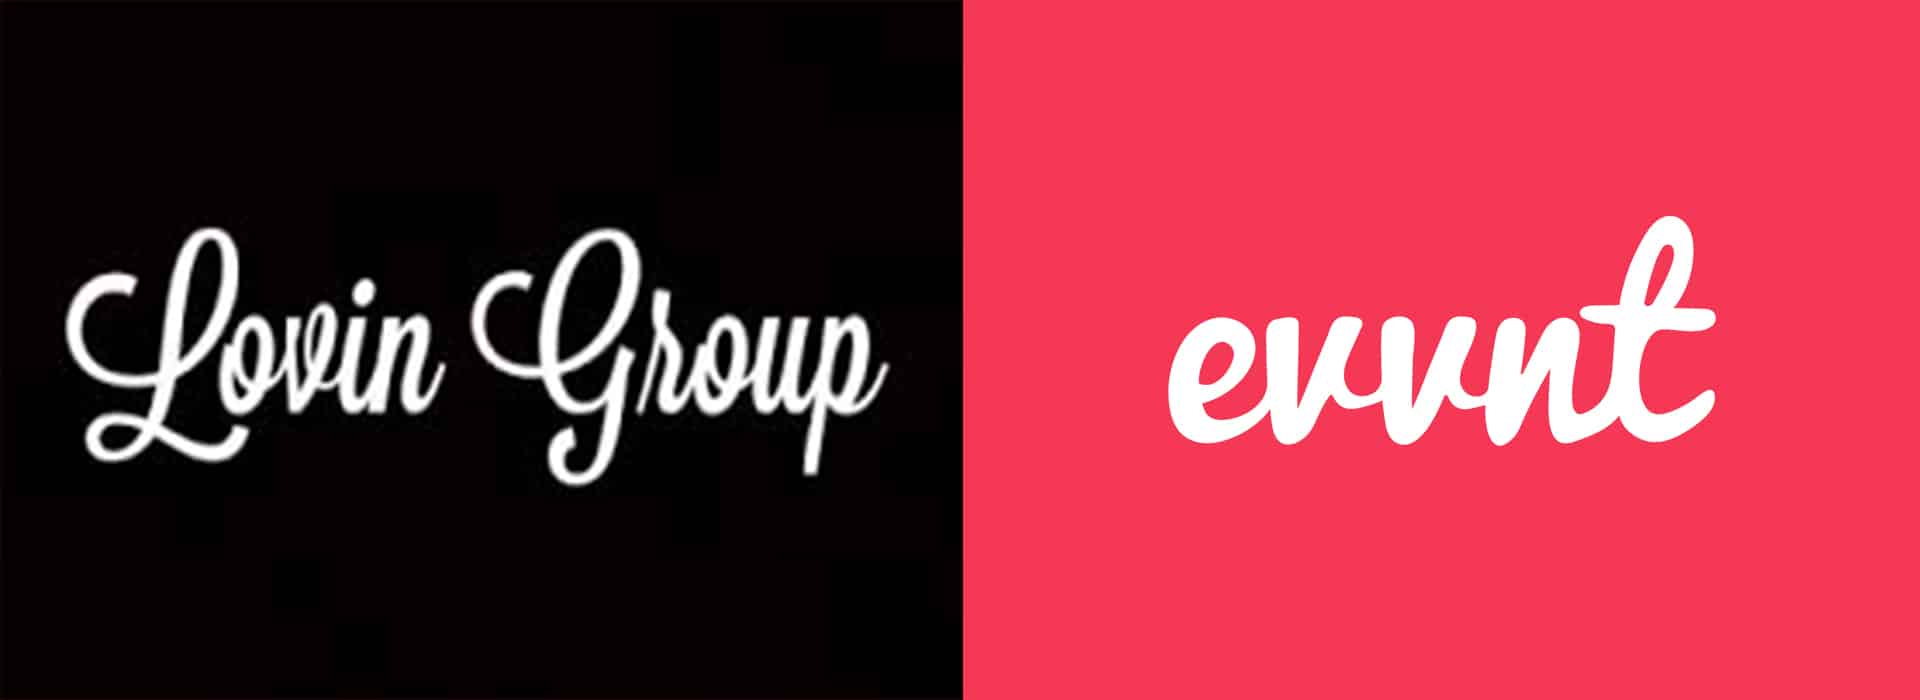 Lovin Group and evvnt logos